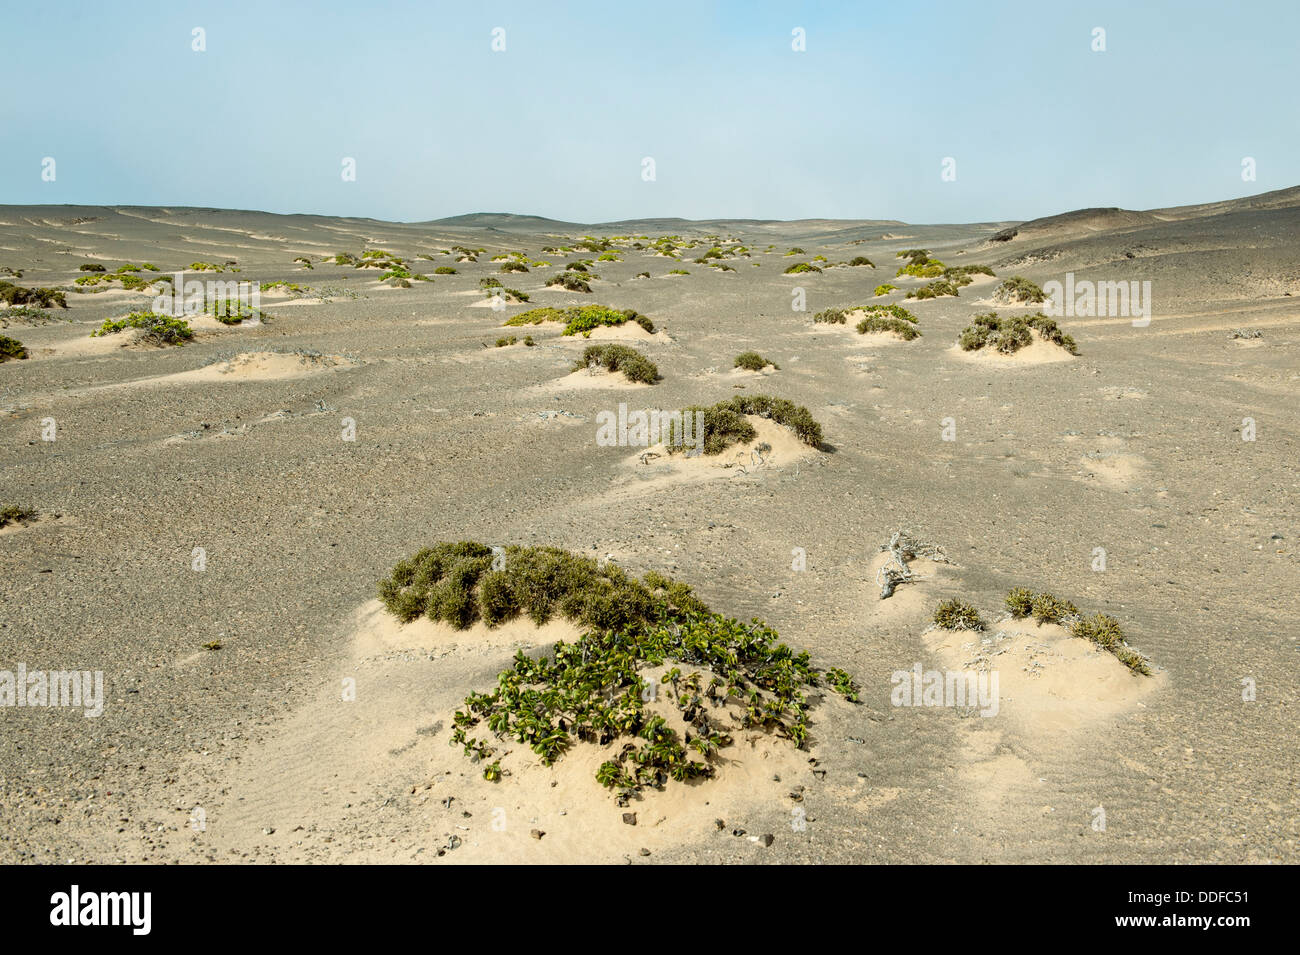 Sand dunes with sparse vegetation, Skeleton Coast National Park, Namibia Stock Photo